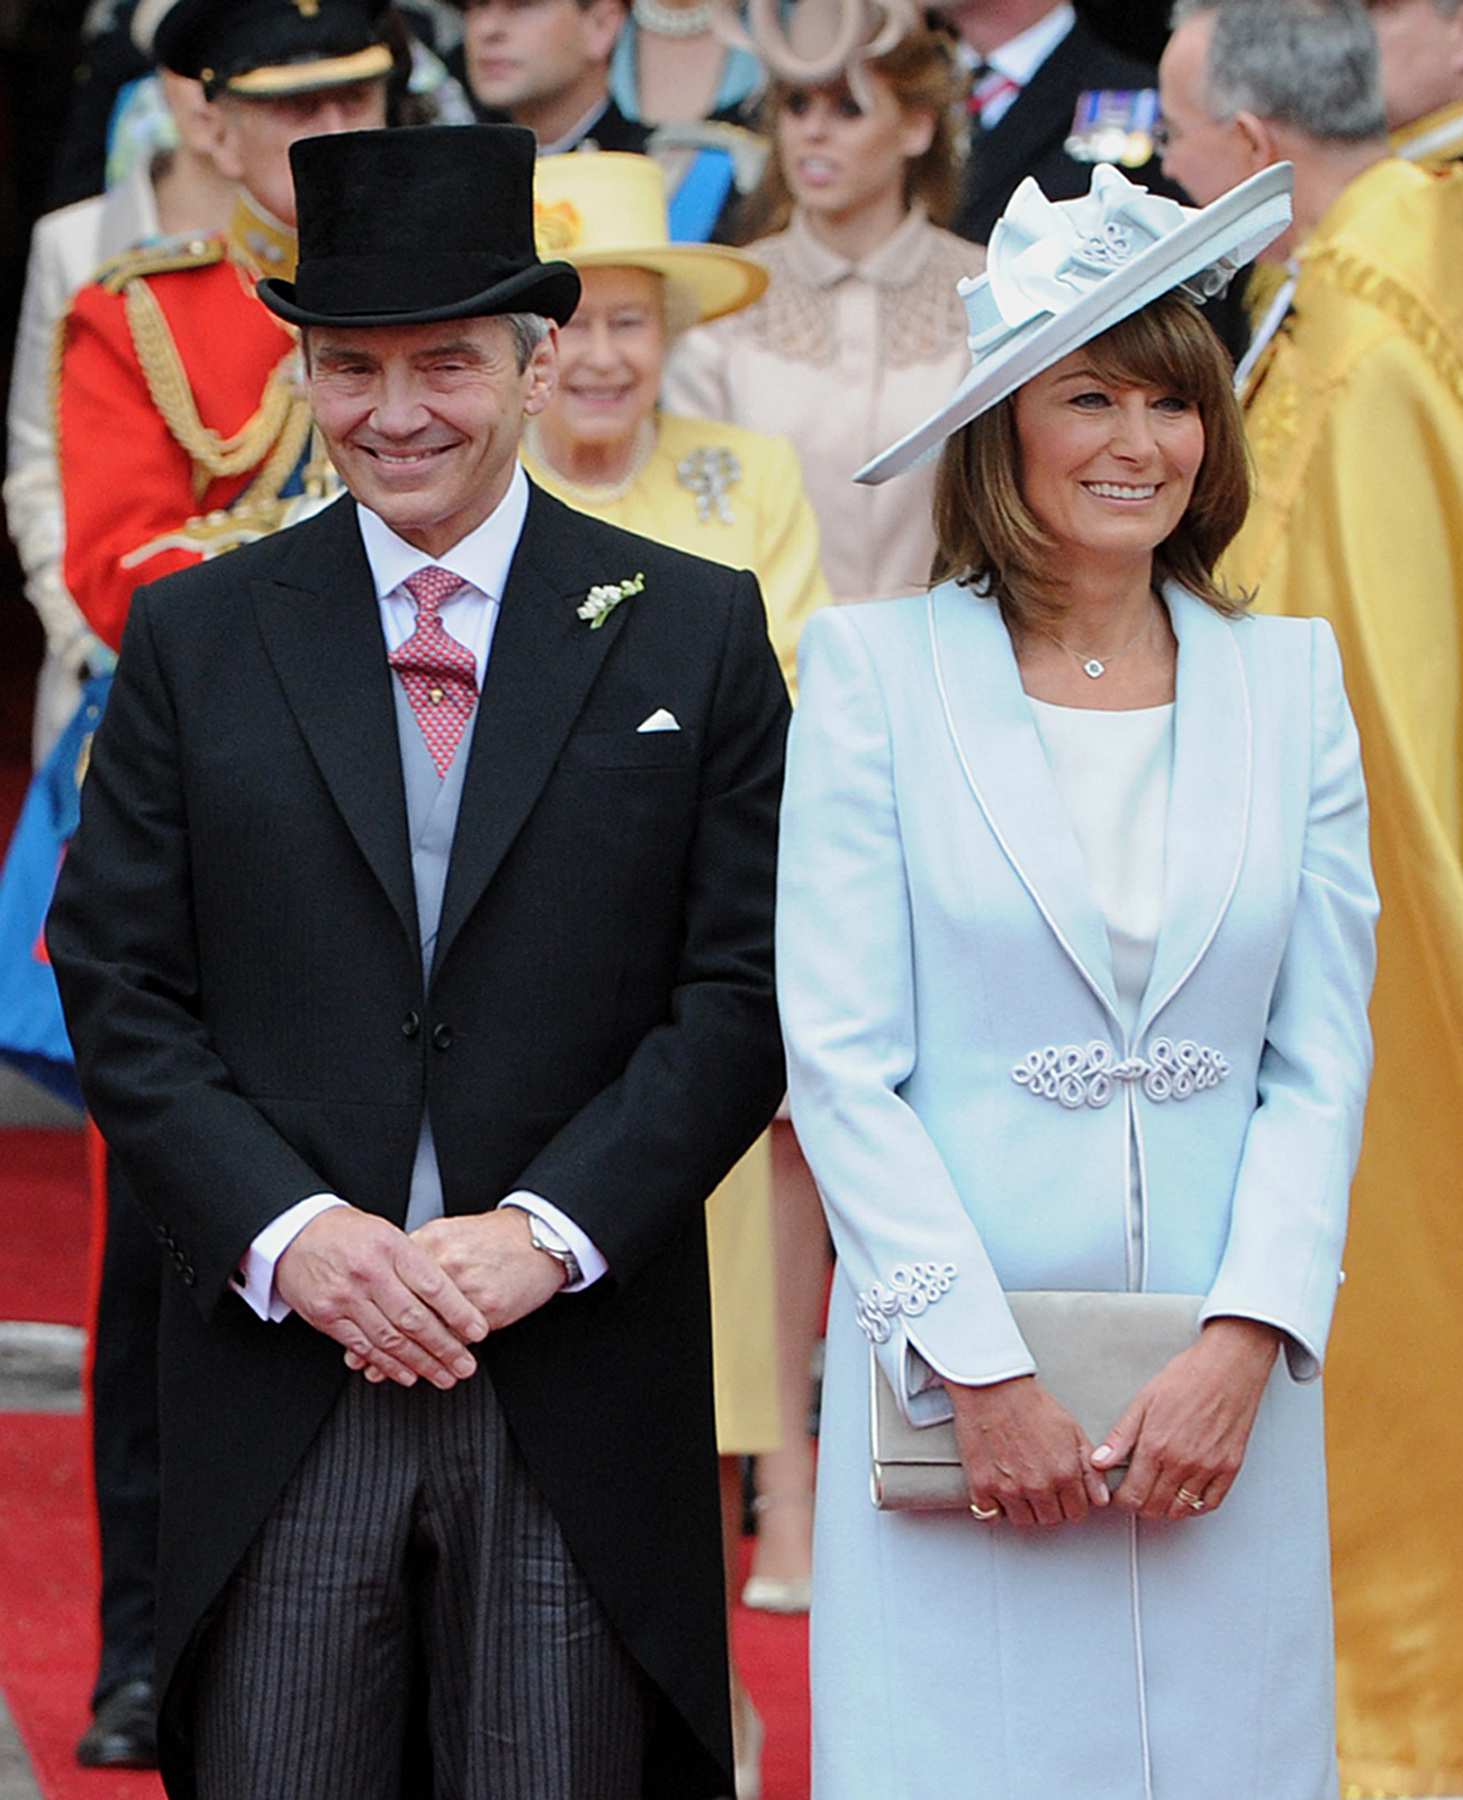 Michael et Carole Middleton sortent de l'abbaye de Westminster à Londres, après la cérémonie de mariage du prince britannique William et de leur fille, le 29 avril 2011. | Source : Getty Images